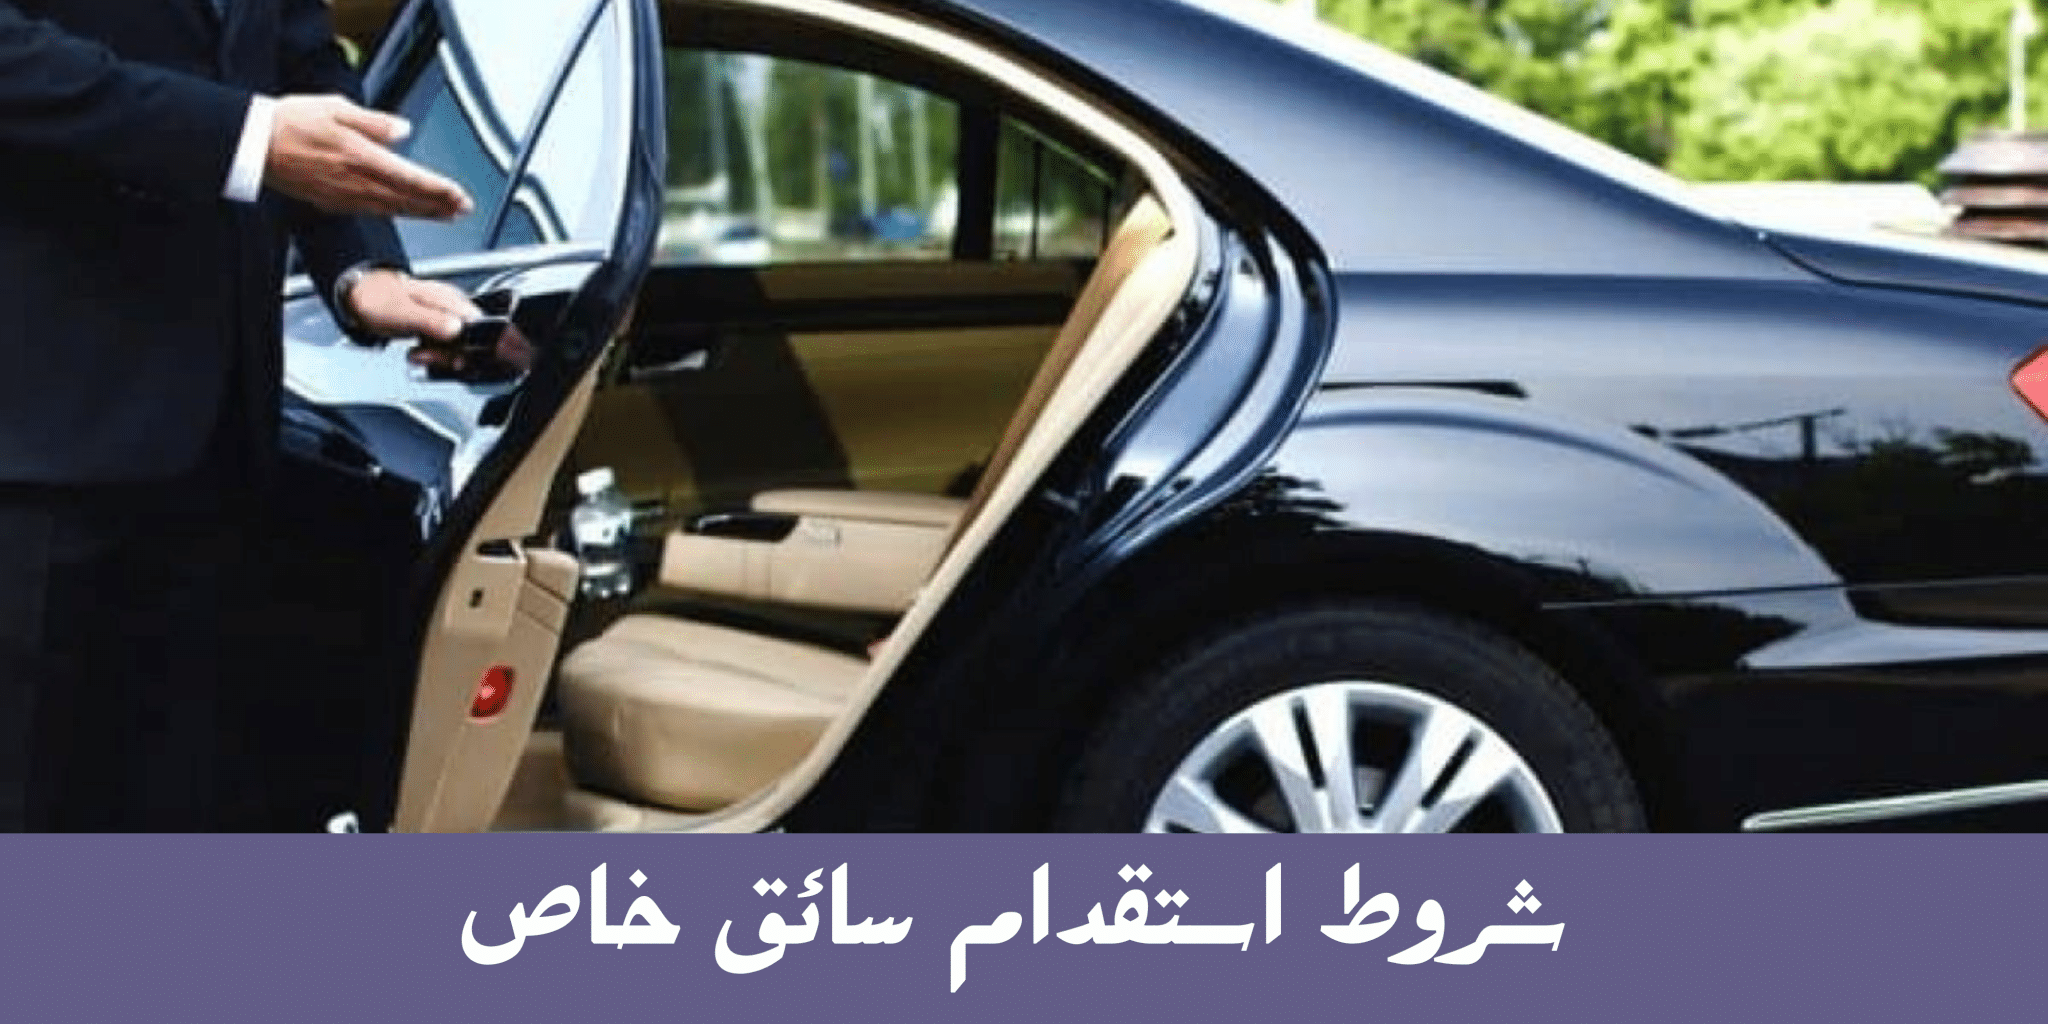 شروط وطريقة استقدام سائق خاص في السعودية 1444هـ